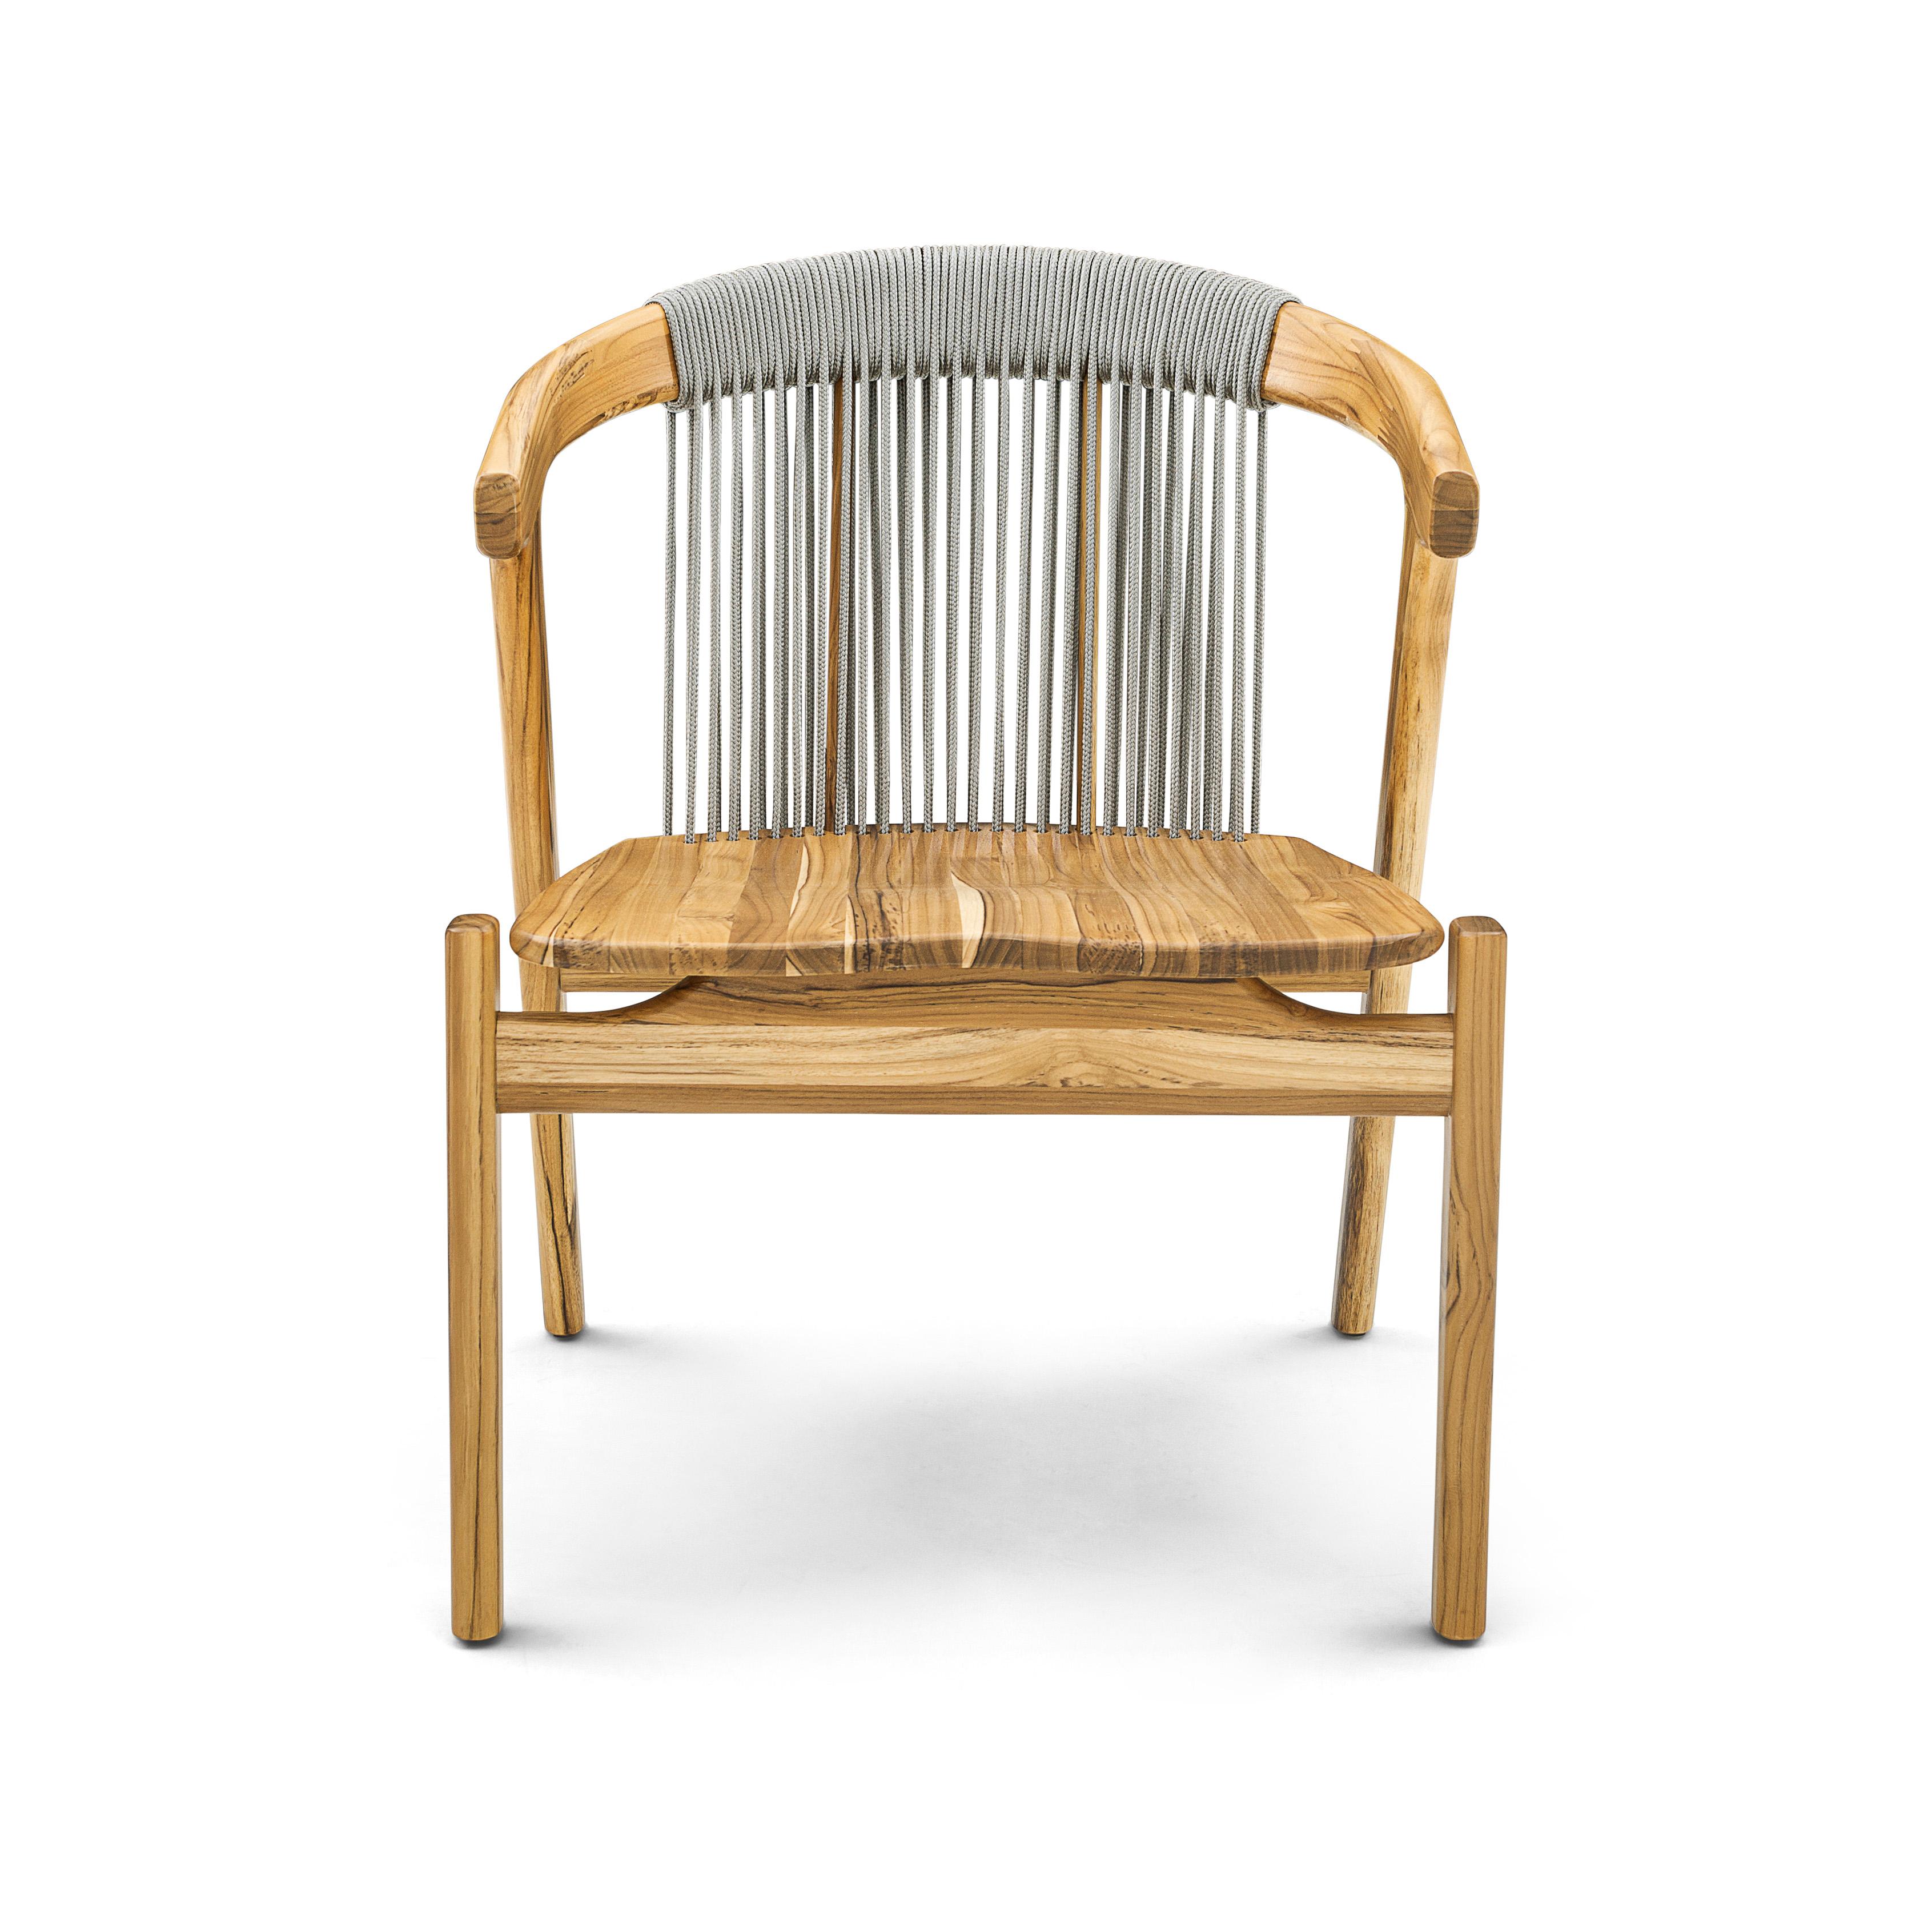 Le fauteuil Vine a été créé par notre incroyable équipe de designers d'Uultis pour un espace extérieur. Il présente une magnifique finition en bois de teck pour les pieds, la structure et l'assise, ainsi qu'un dossier incurvé avec des cordes de